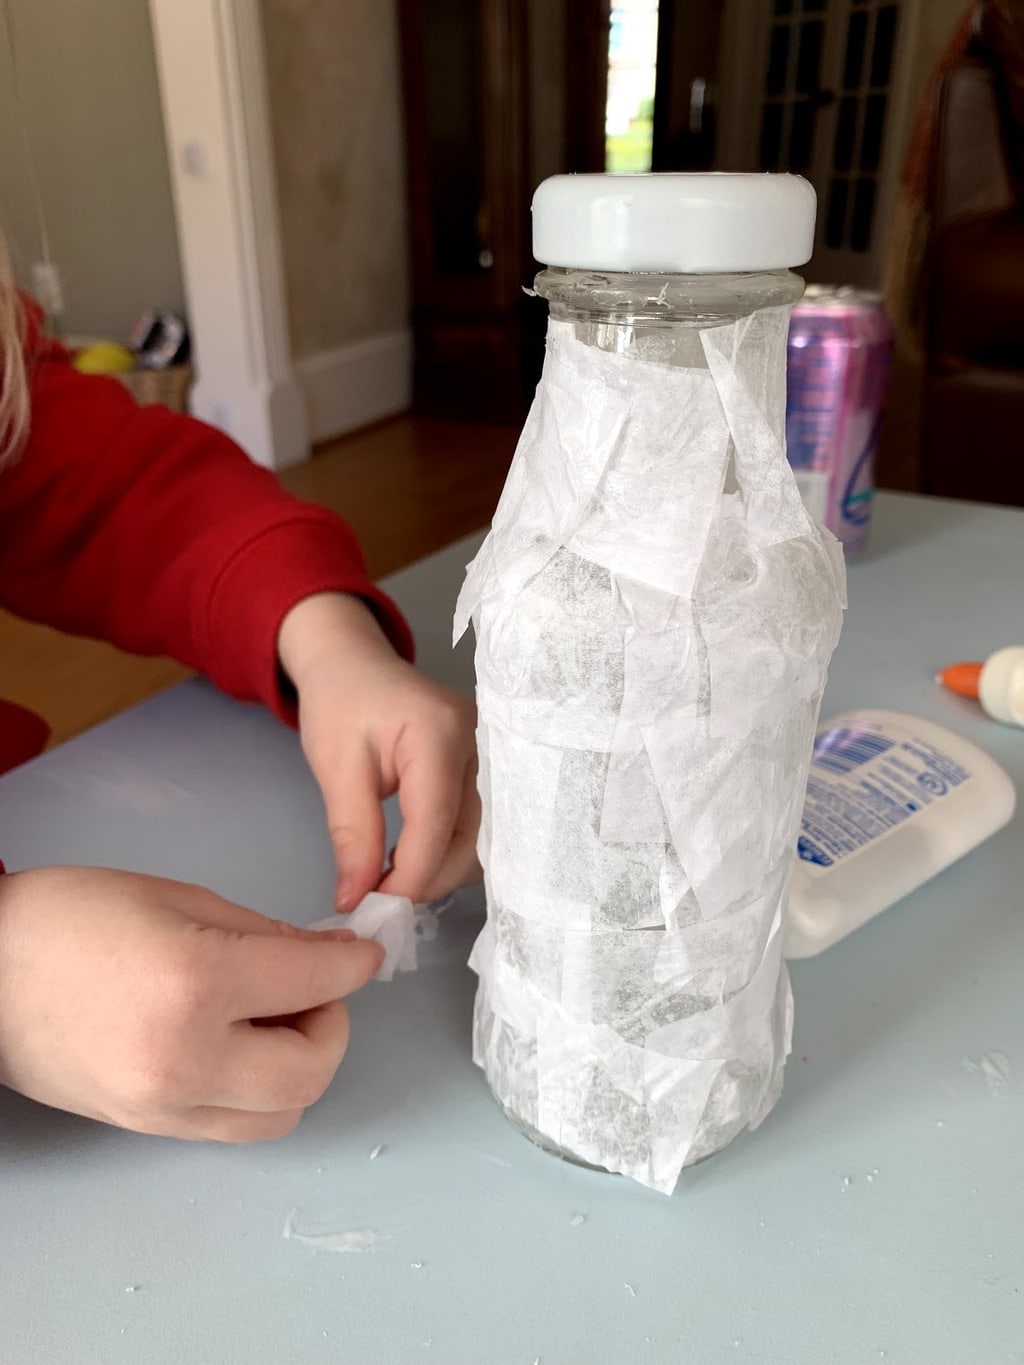 Child gluing white tissue paper on bottle